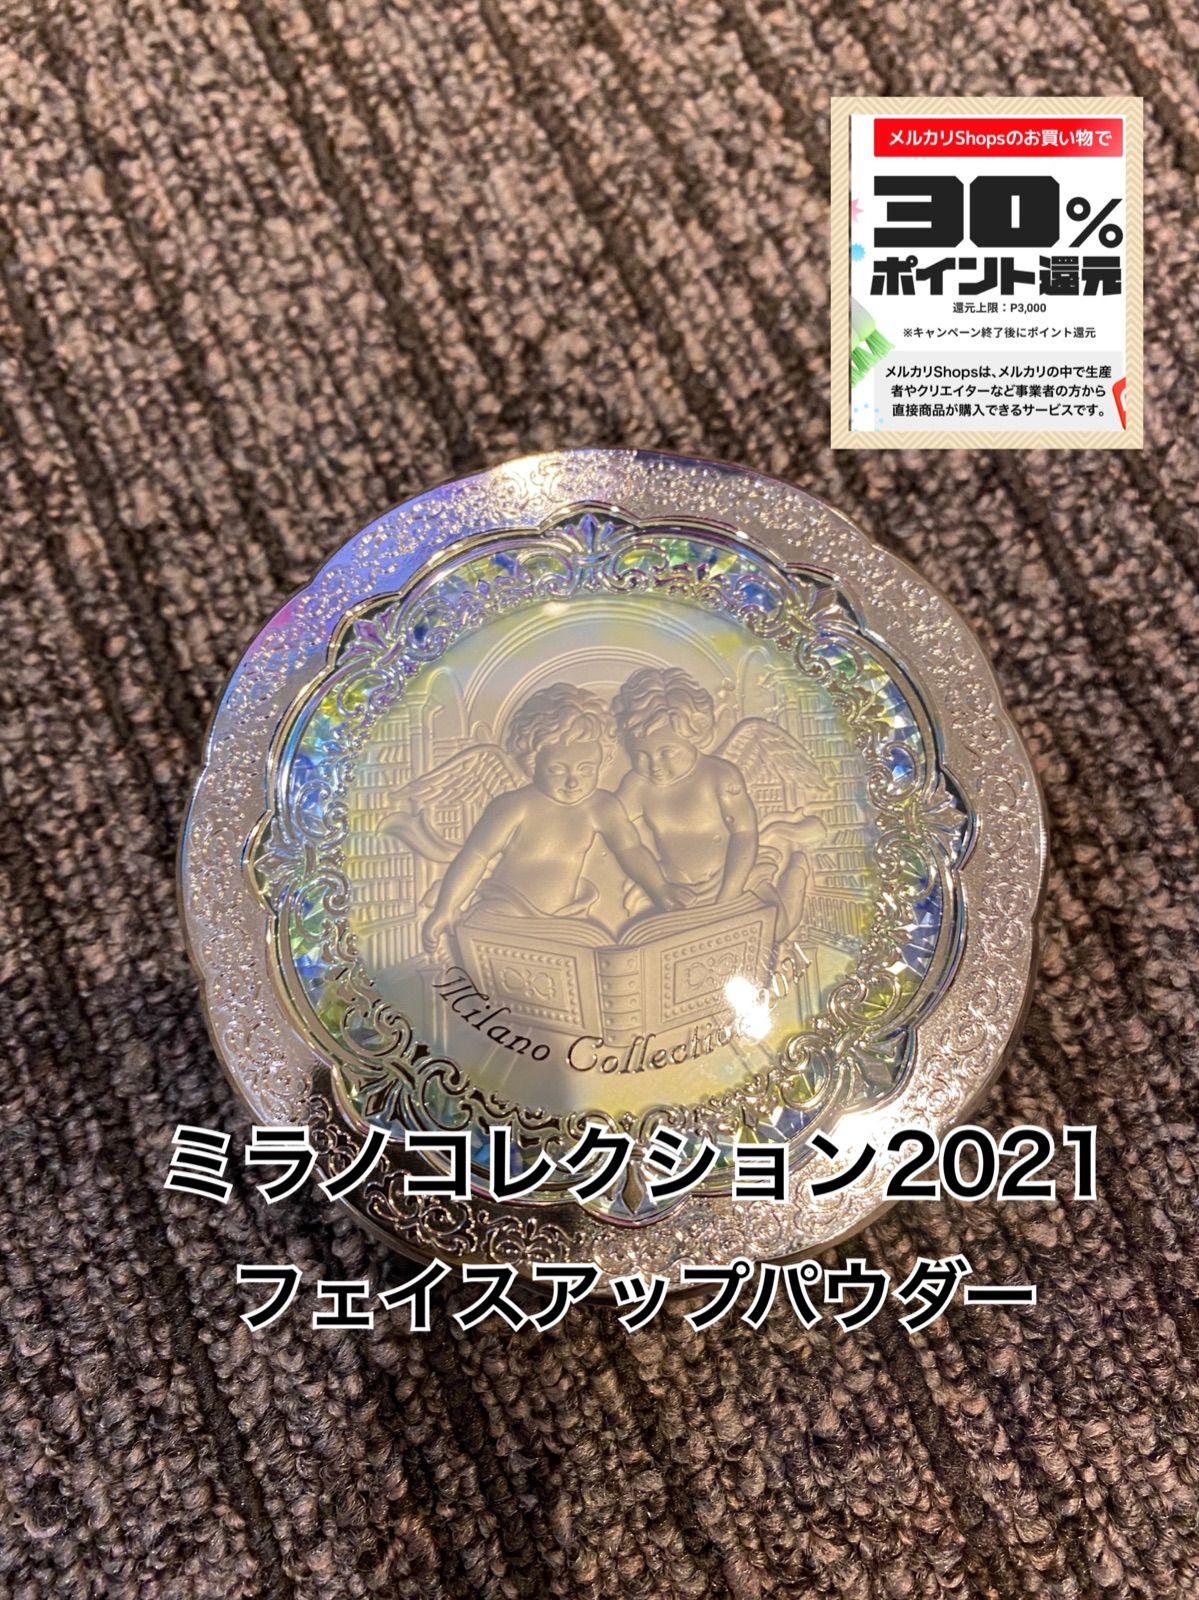 ミラノコレクション フェースアップパウダー2021 - みぃと - メルカリ